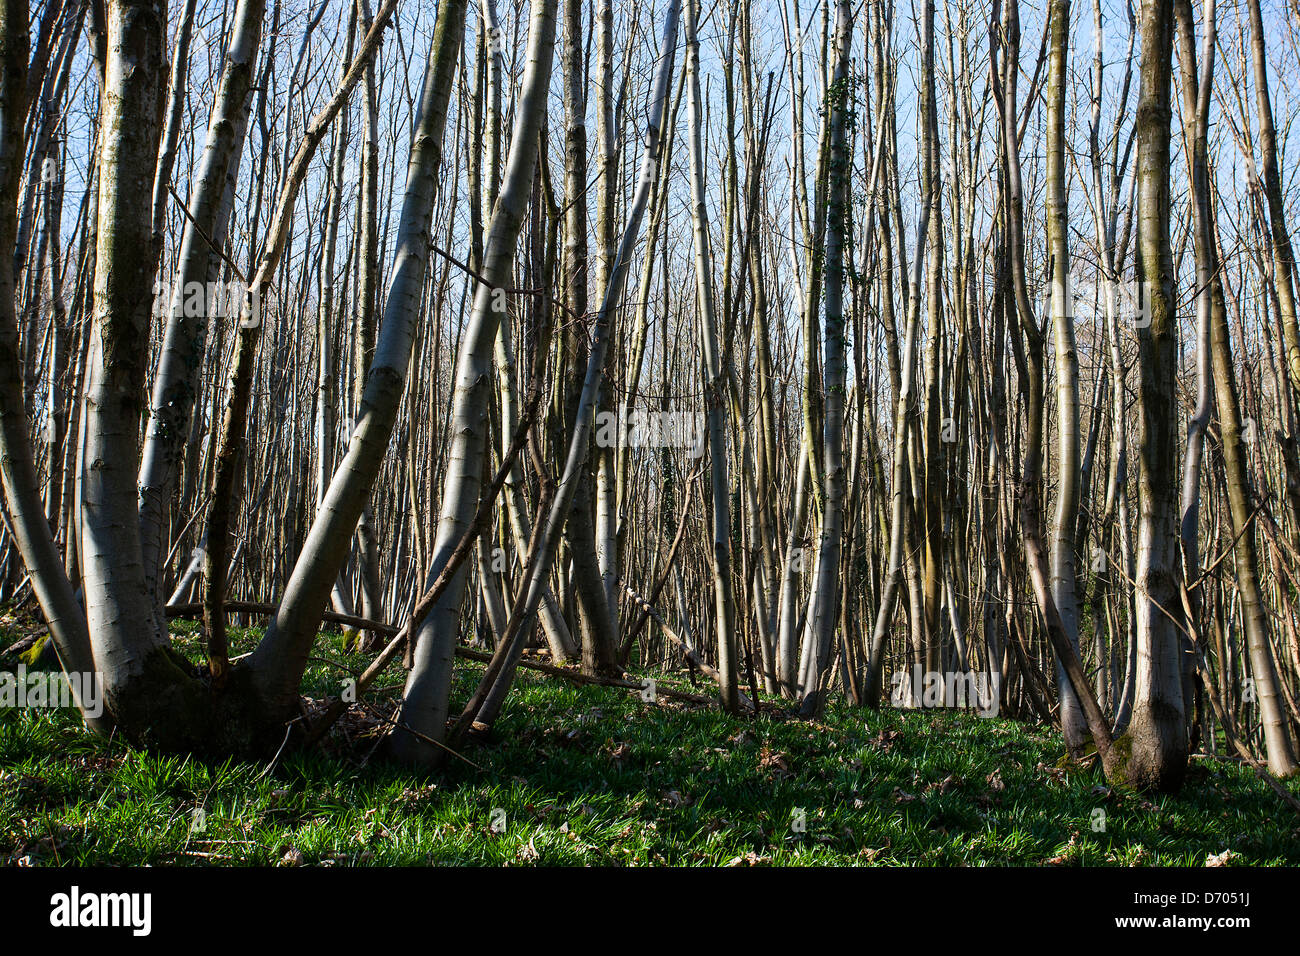 Tall thin dense trees in woodland Stock Photo